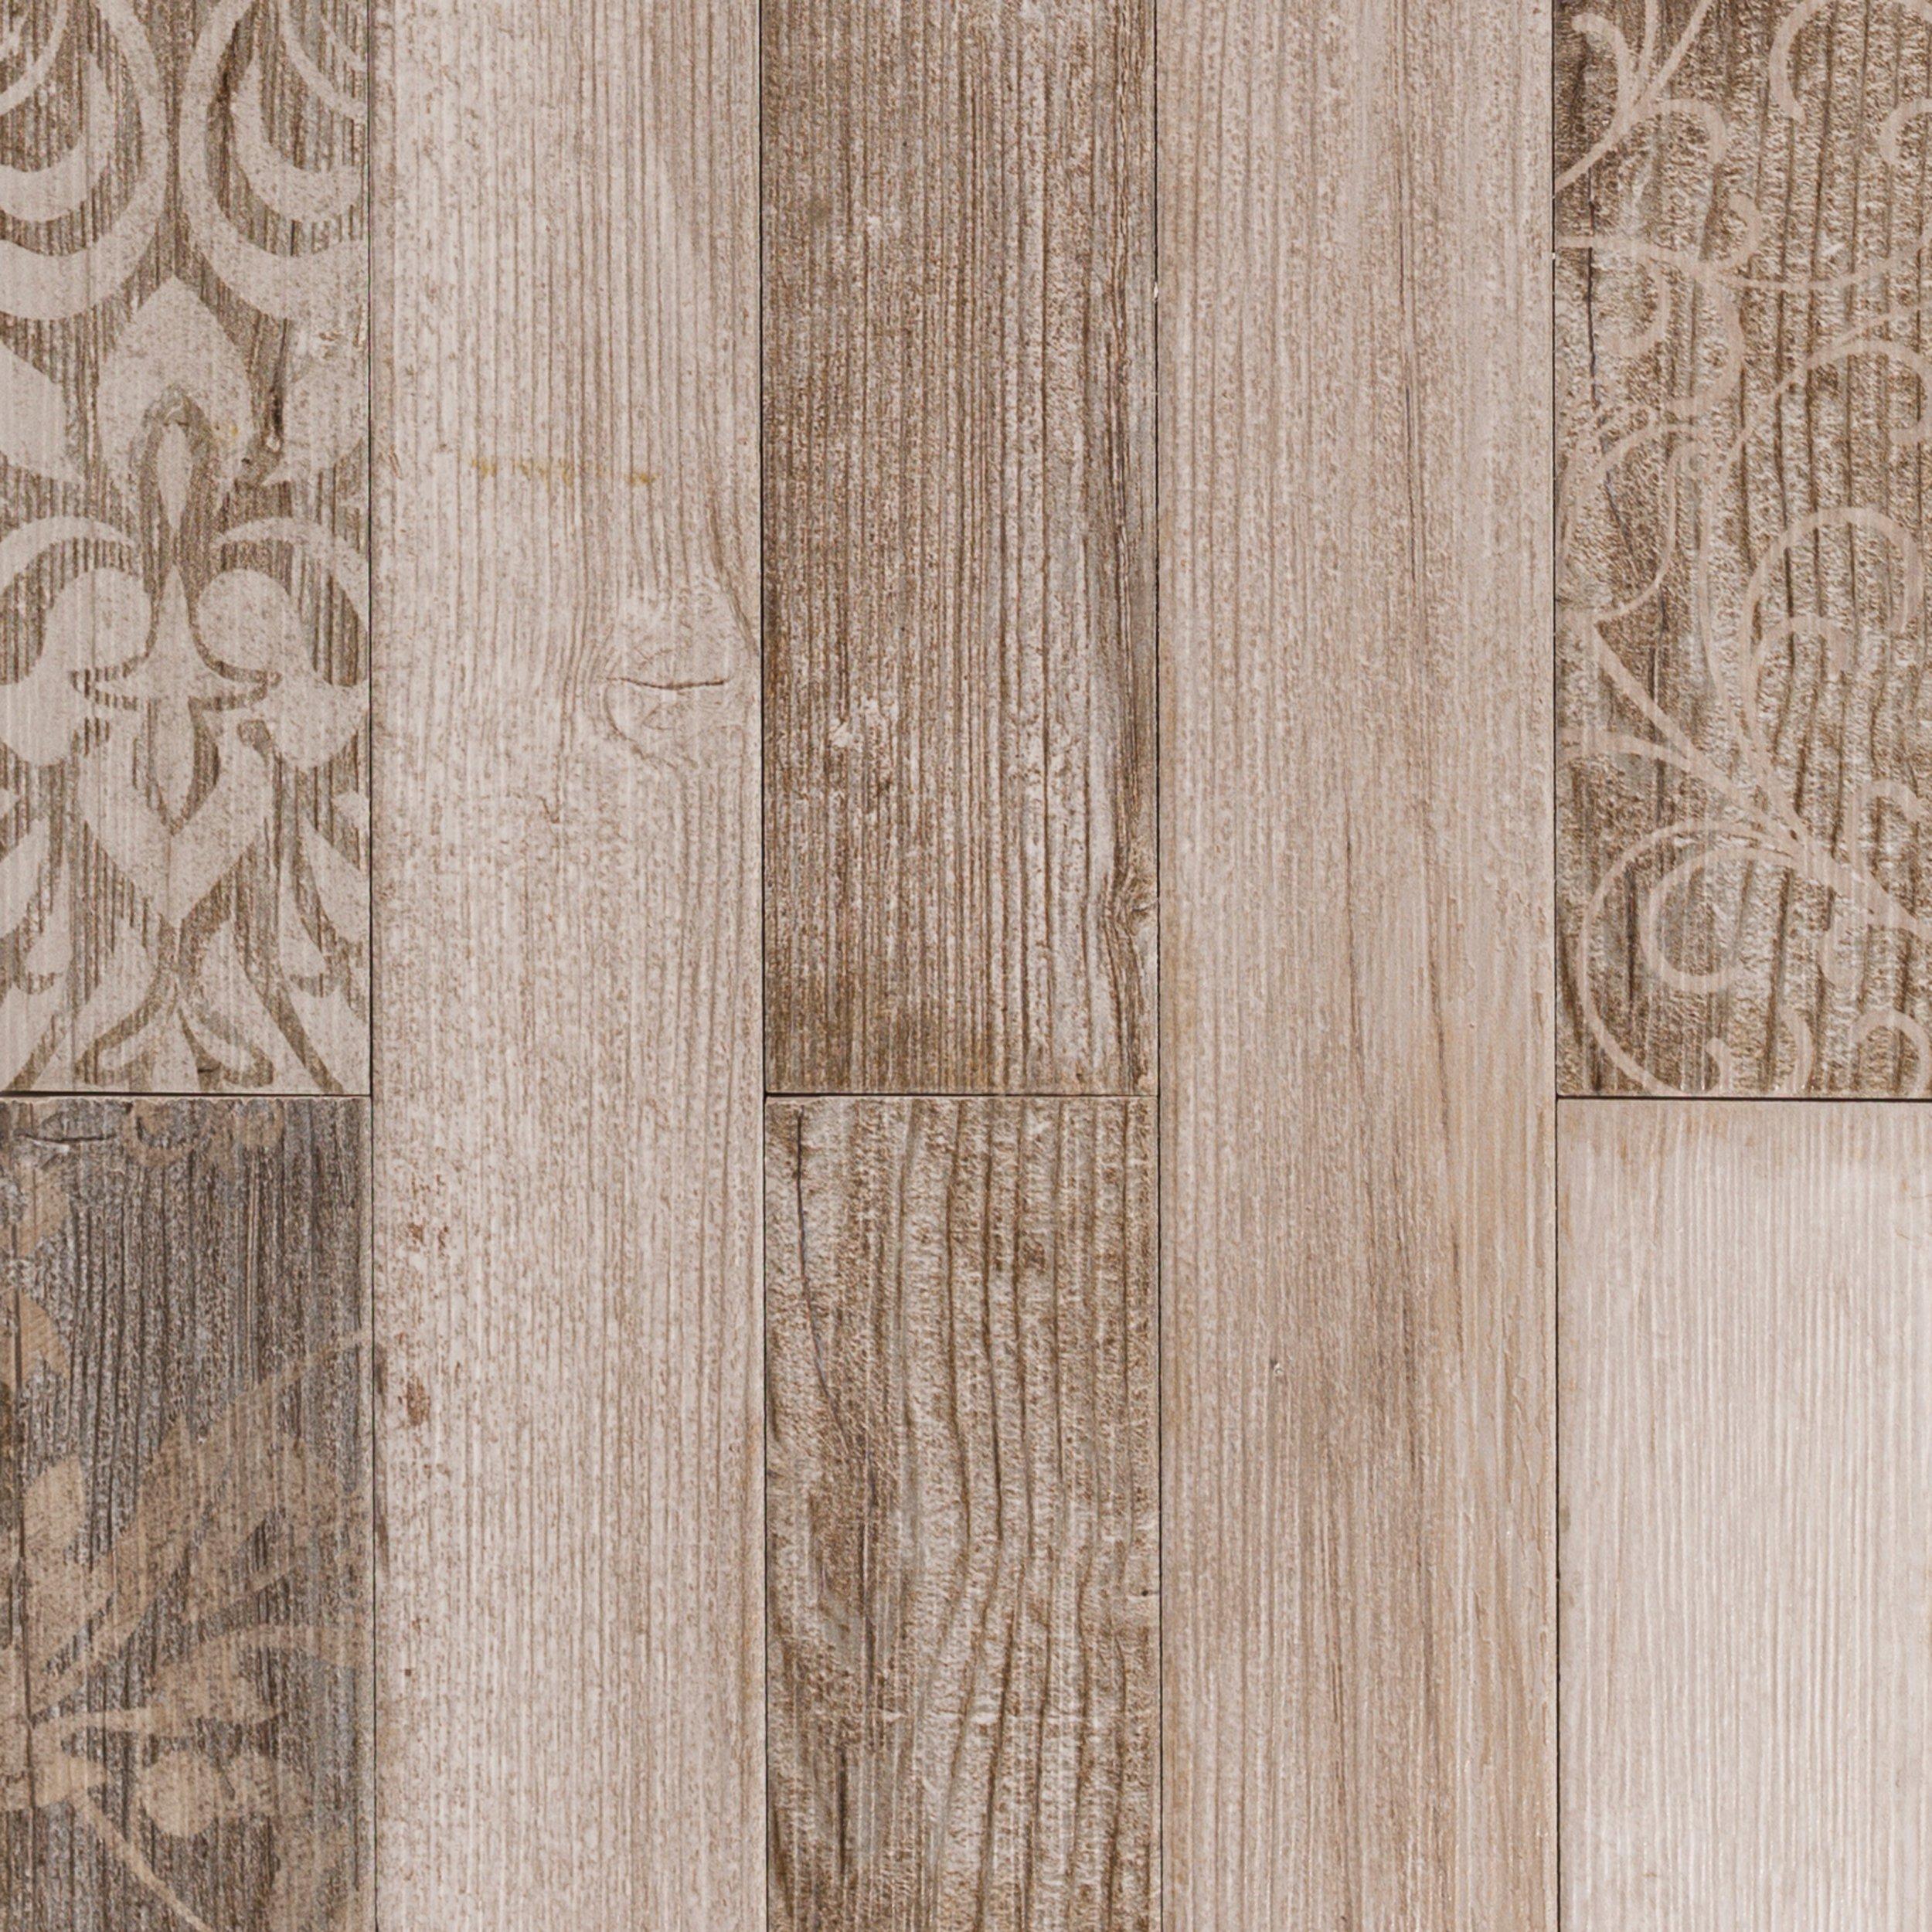 Designer Driftwood Wood Plank Porcelain, Designers Image Vinyl Floor Tile